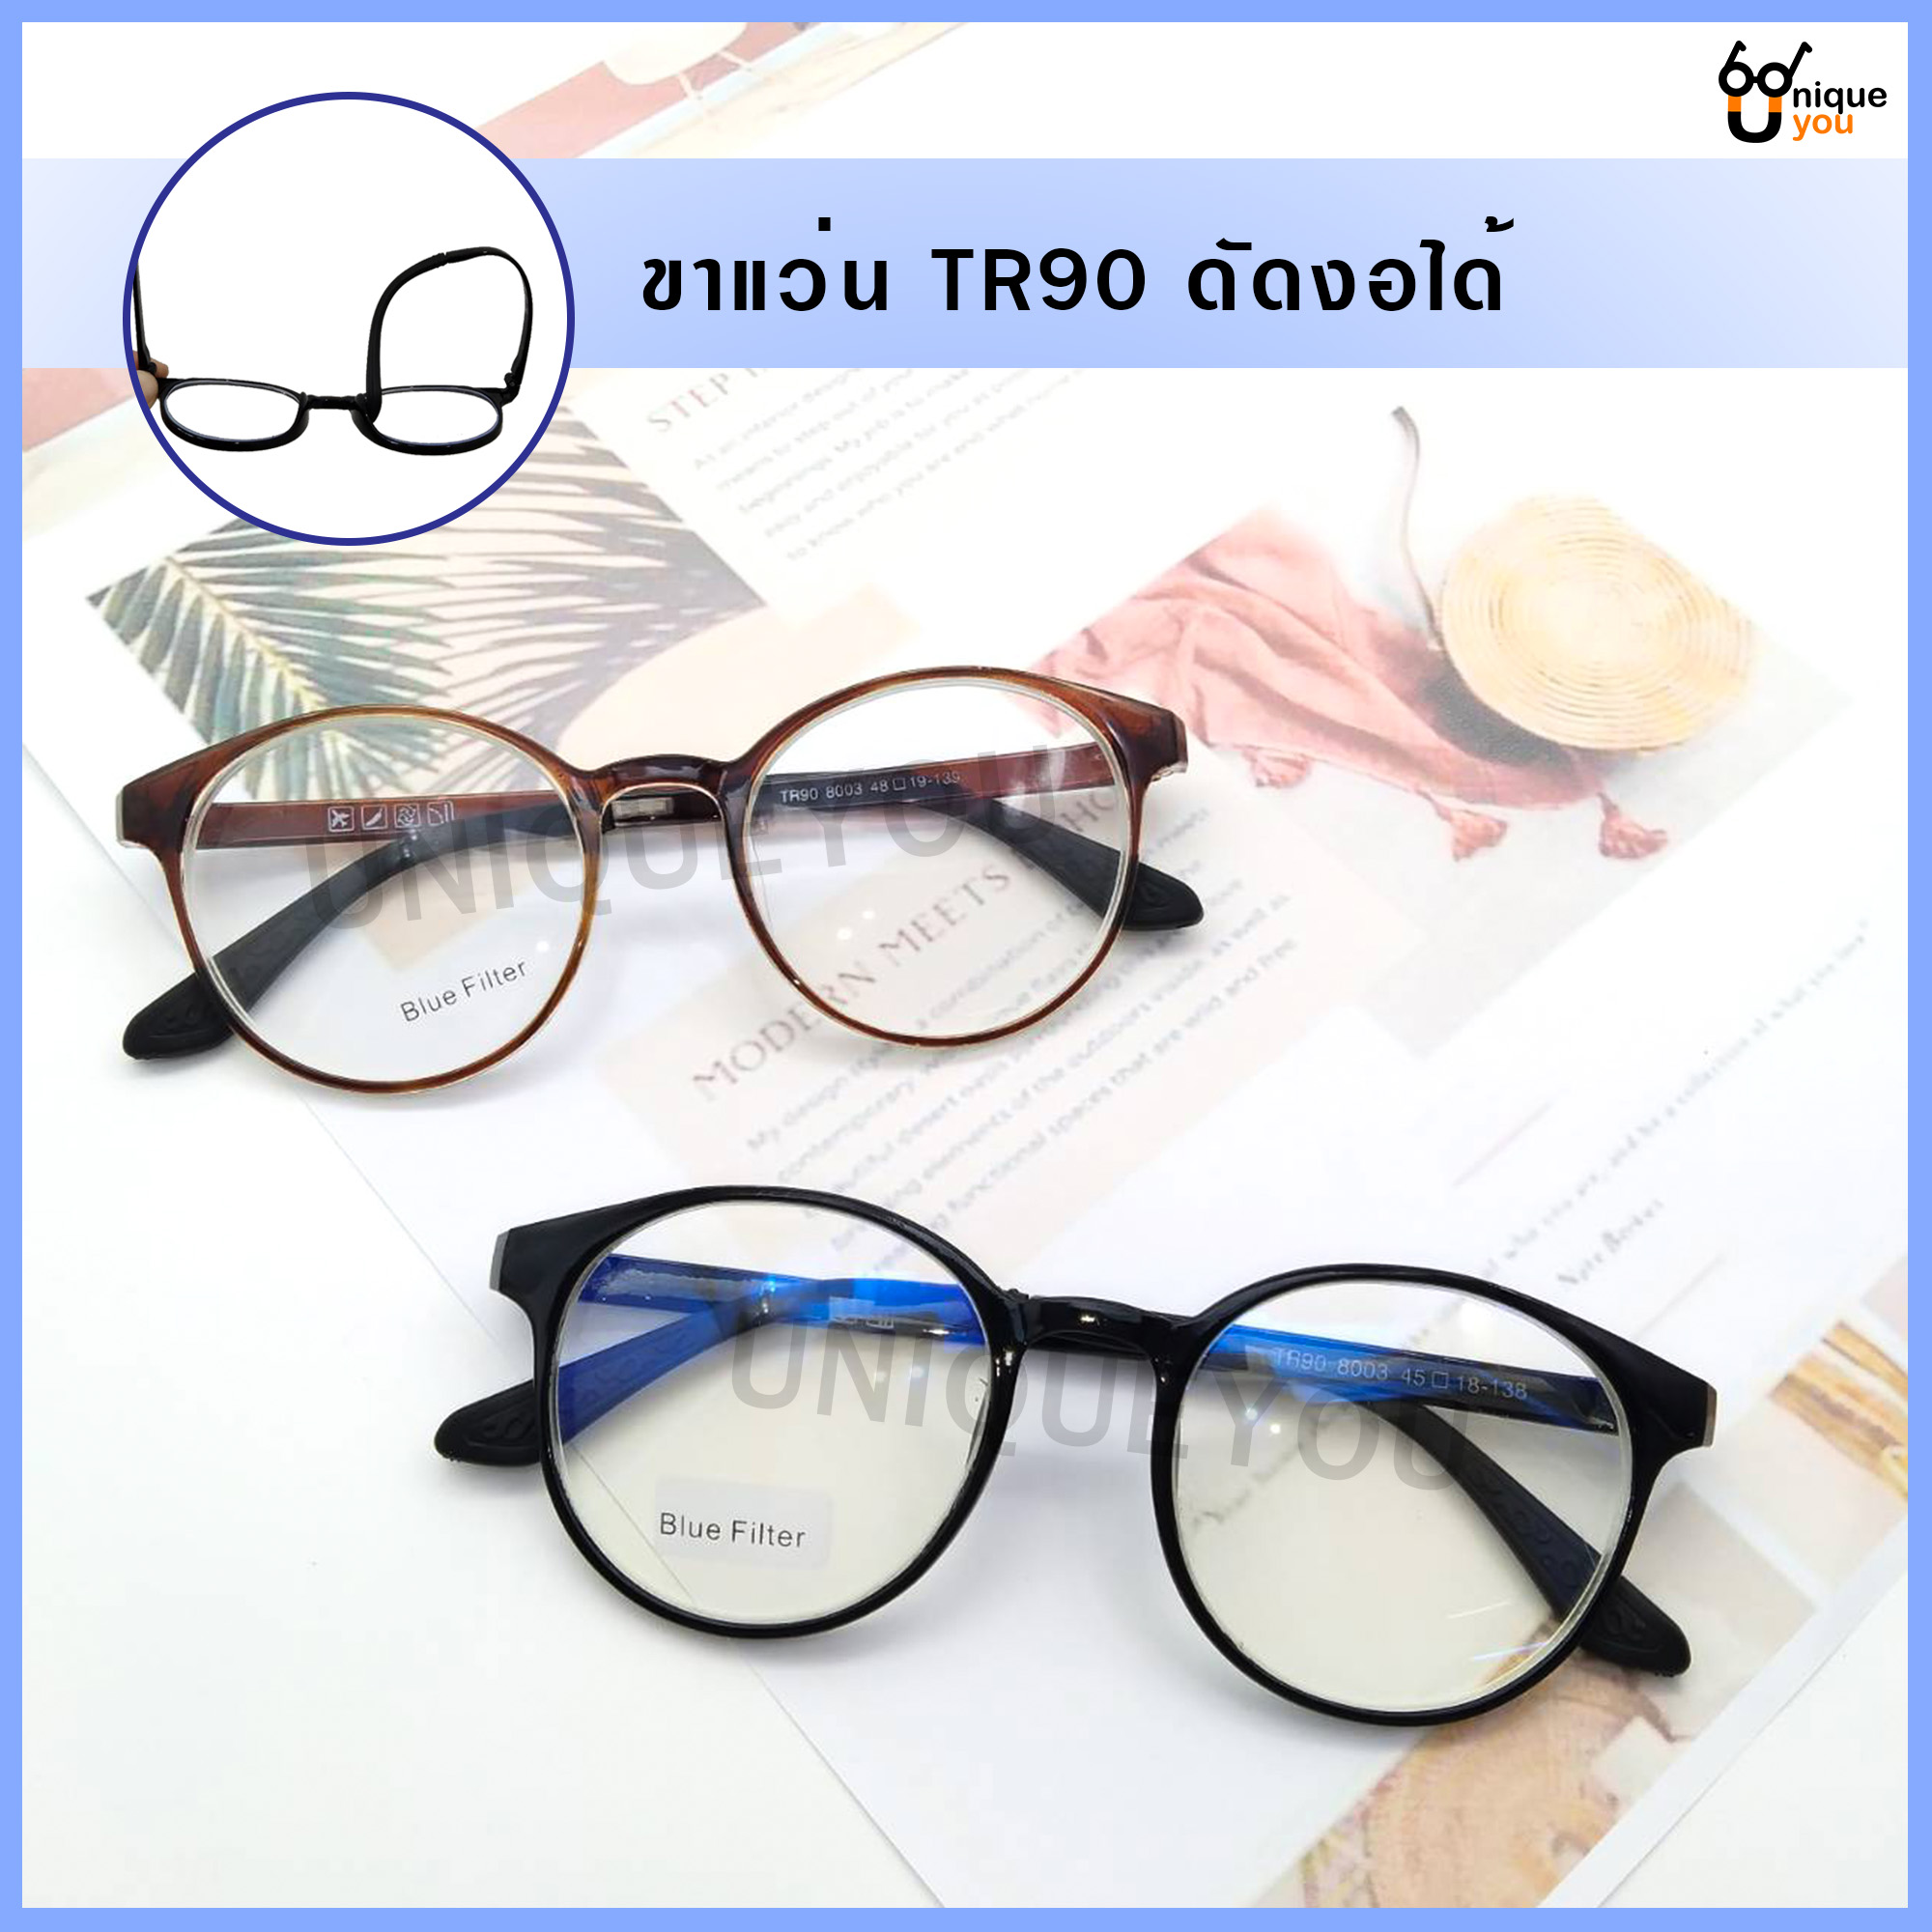 รูปภาพเพิ่มเติมของ Uniq แว่นสายตาสั้นและสายตายาว  เลนส์กรองแสงสีฟ้า Blue Filter เลนส์ชัดน้ำหนักเบา คุณภาพอย่างดี พร้อมผ้าเช็ดแว่นและถุงผ้าใส่แว่น